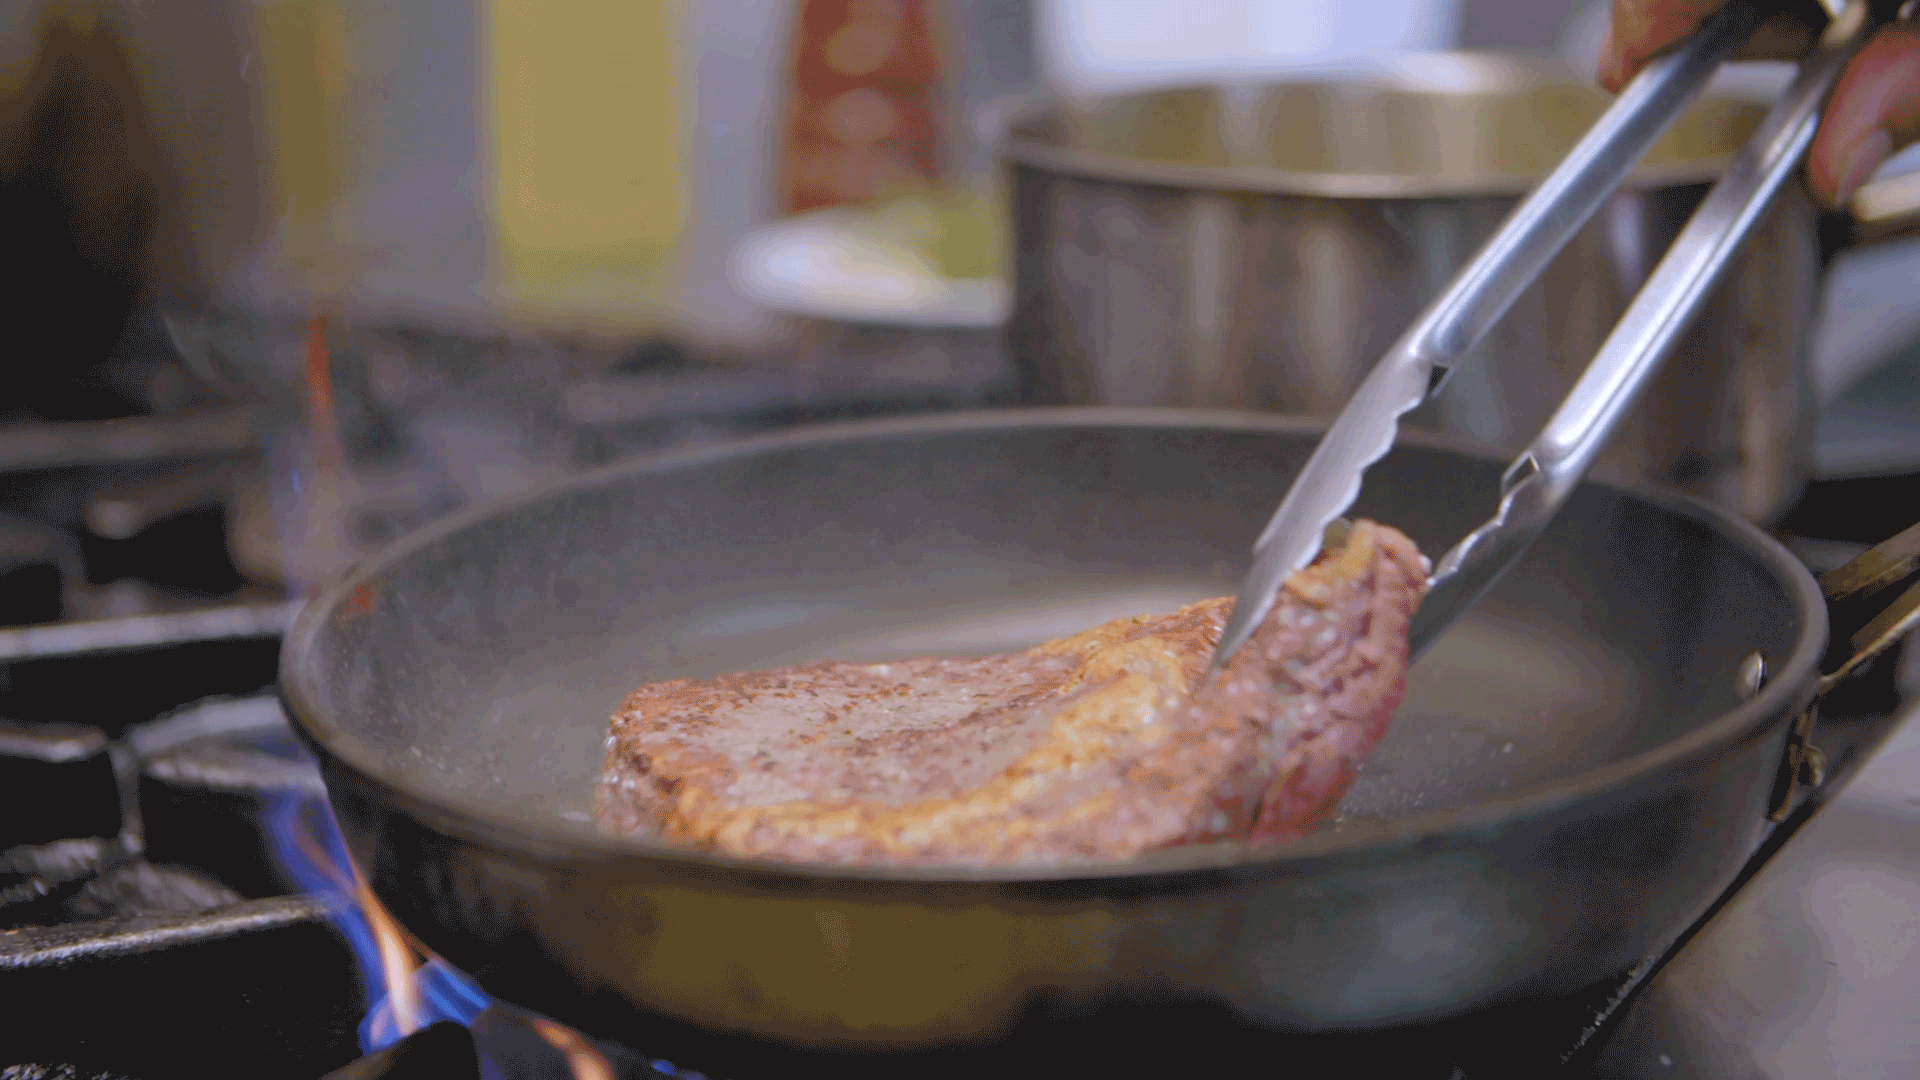 Greenstone Creek steak cooking in pan